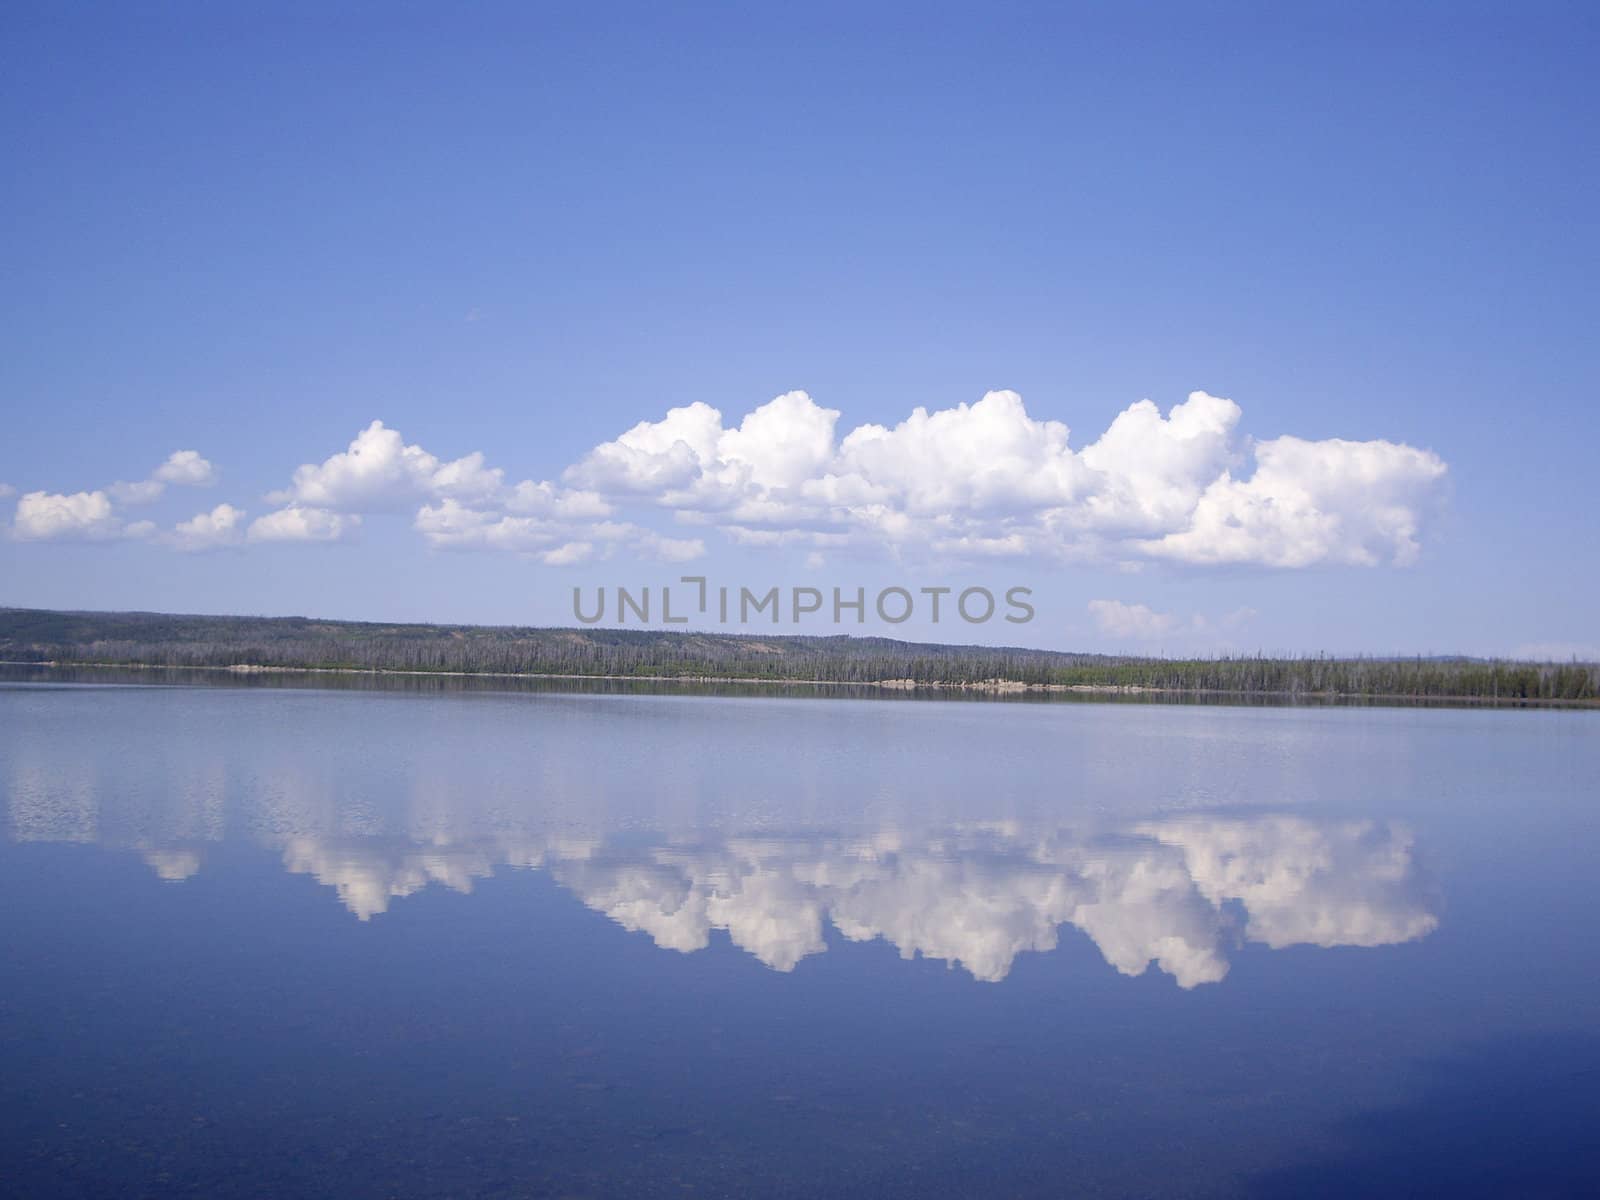 Clouds reflect on clear Yellowstone Lake USA